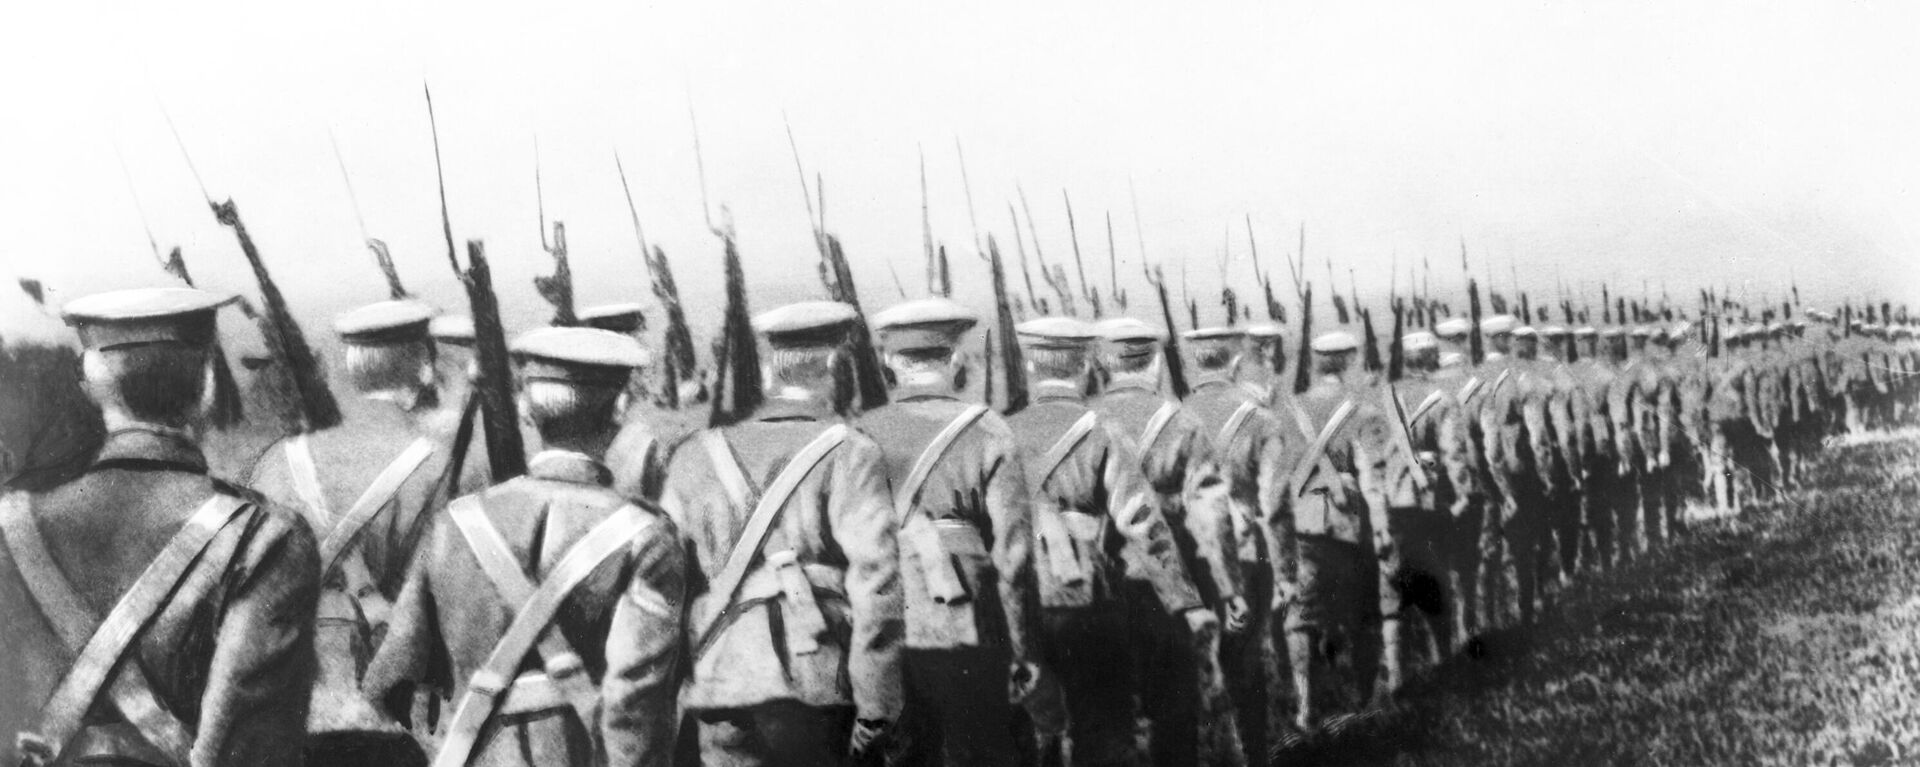 Soldados británicos en el Cáucaso durante la guerra civil rusa - Sputnik Mundo, 1920, 12.03.2021